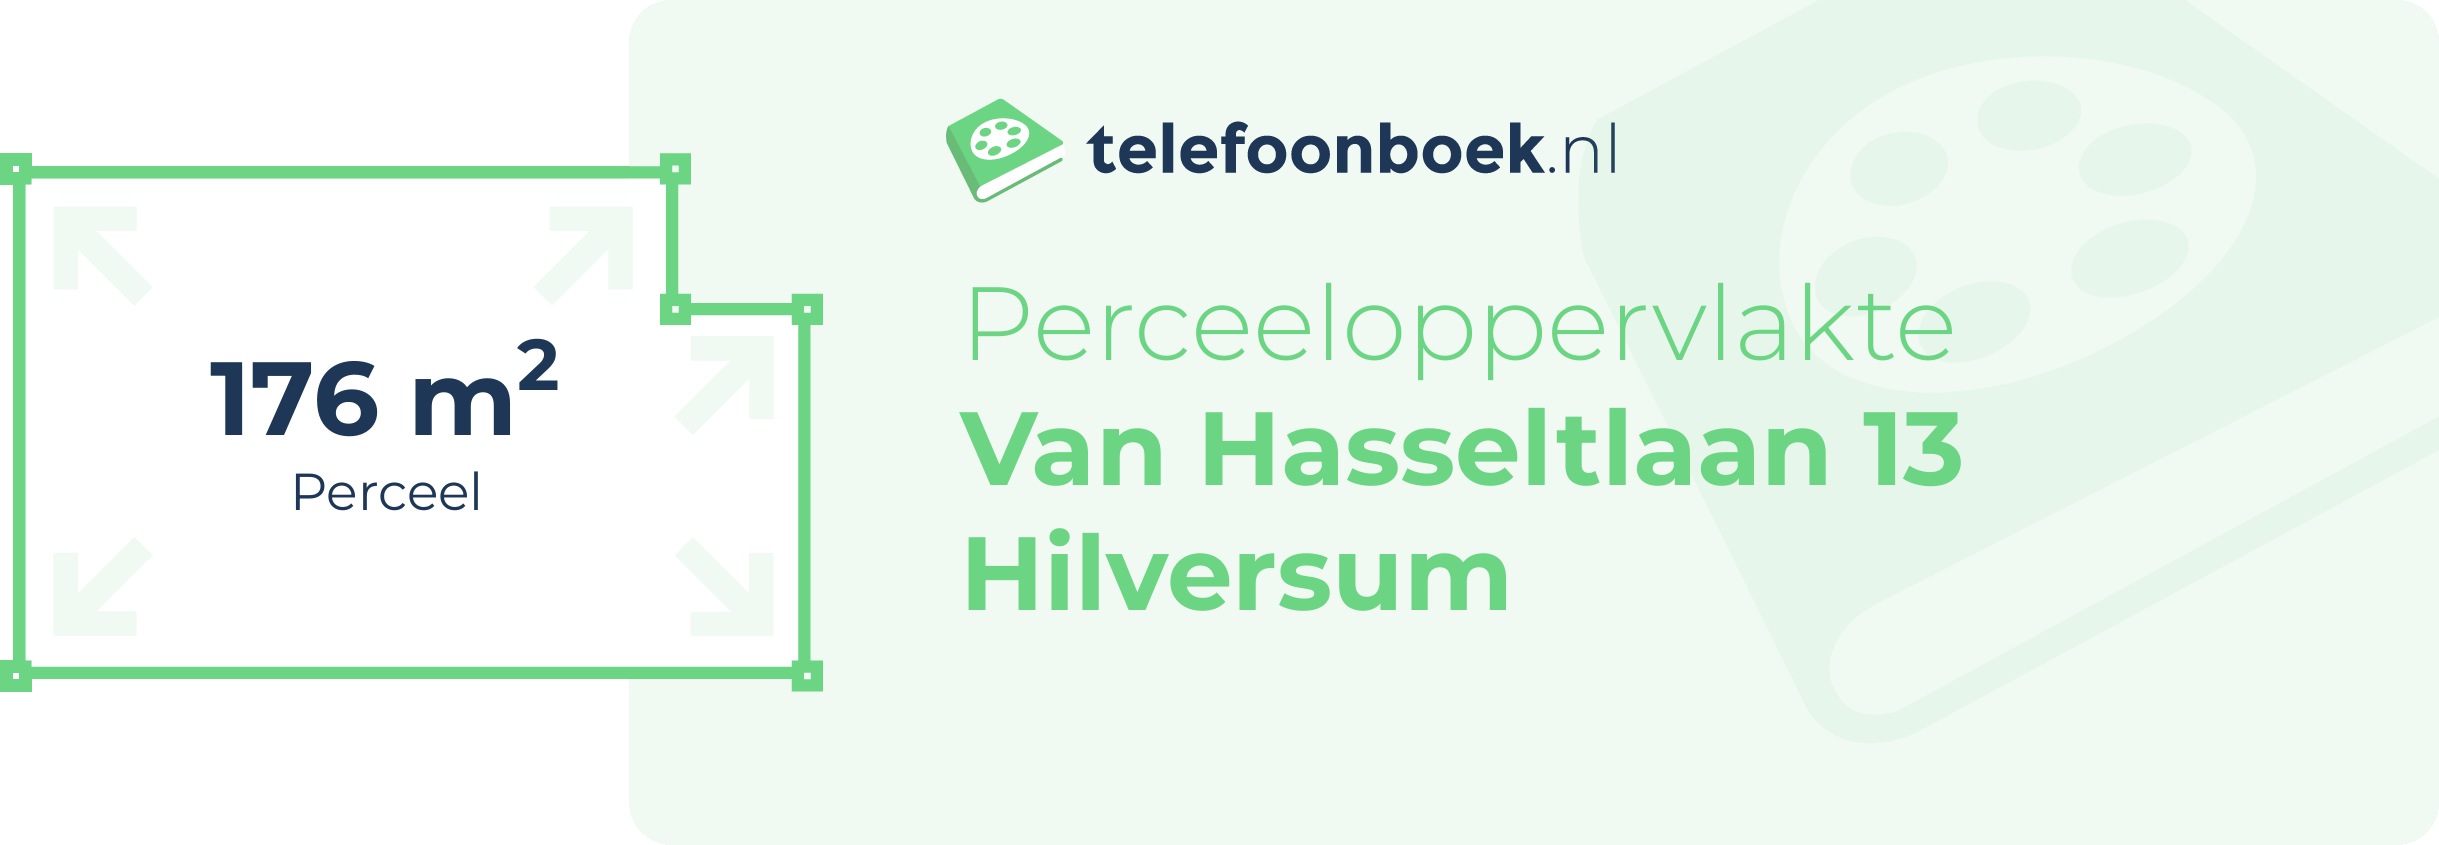 Perceeloppervlakte Van Hasseltlaan 13 Hilversum